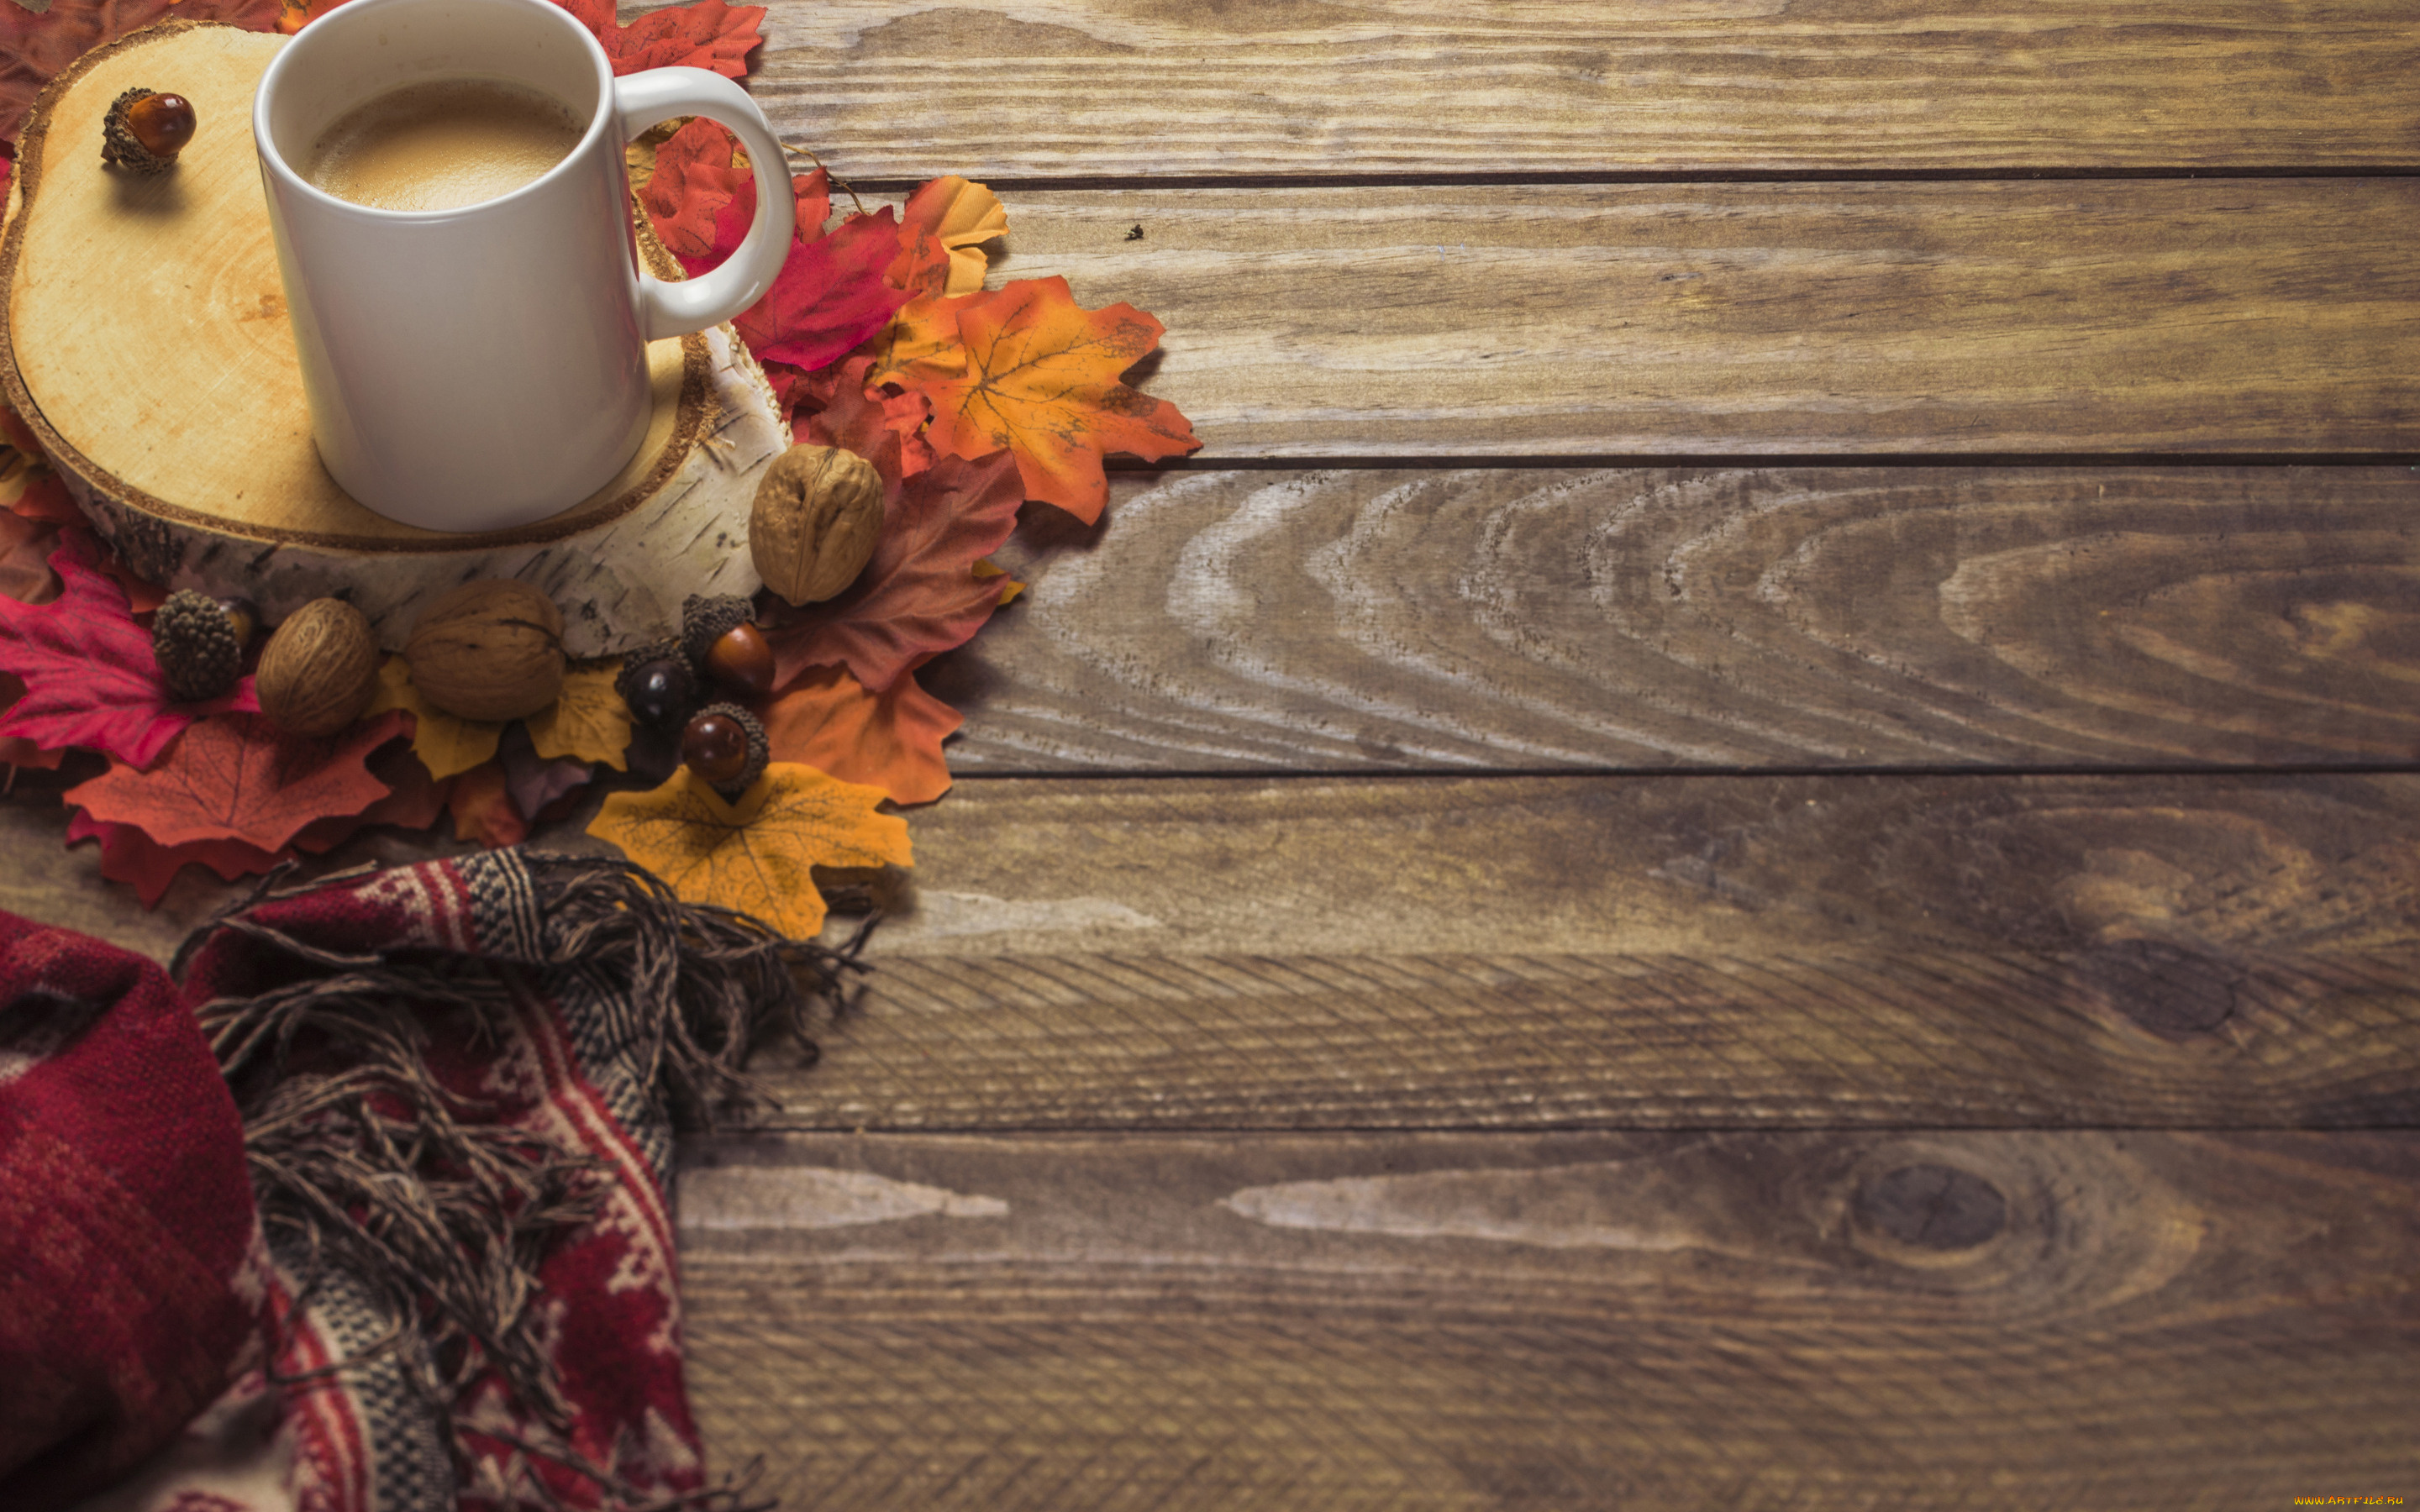 еда, кофе, , кофейные, зёрна, background, wood, чашка, шарф, colorful, дерево, фон, листья, осень, maple, осенние, coffee, cup, leaves, autumn